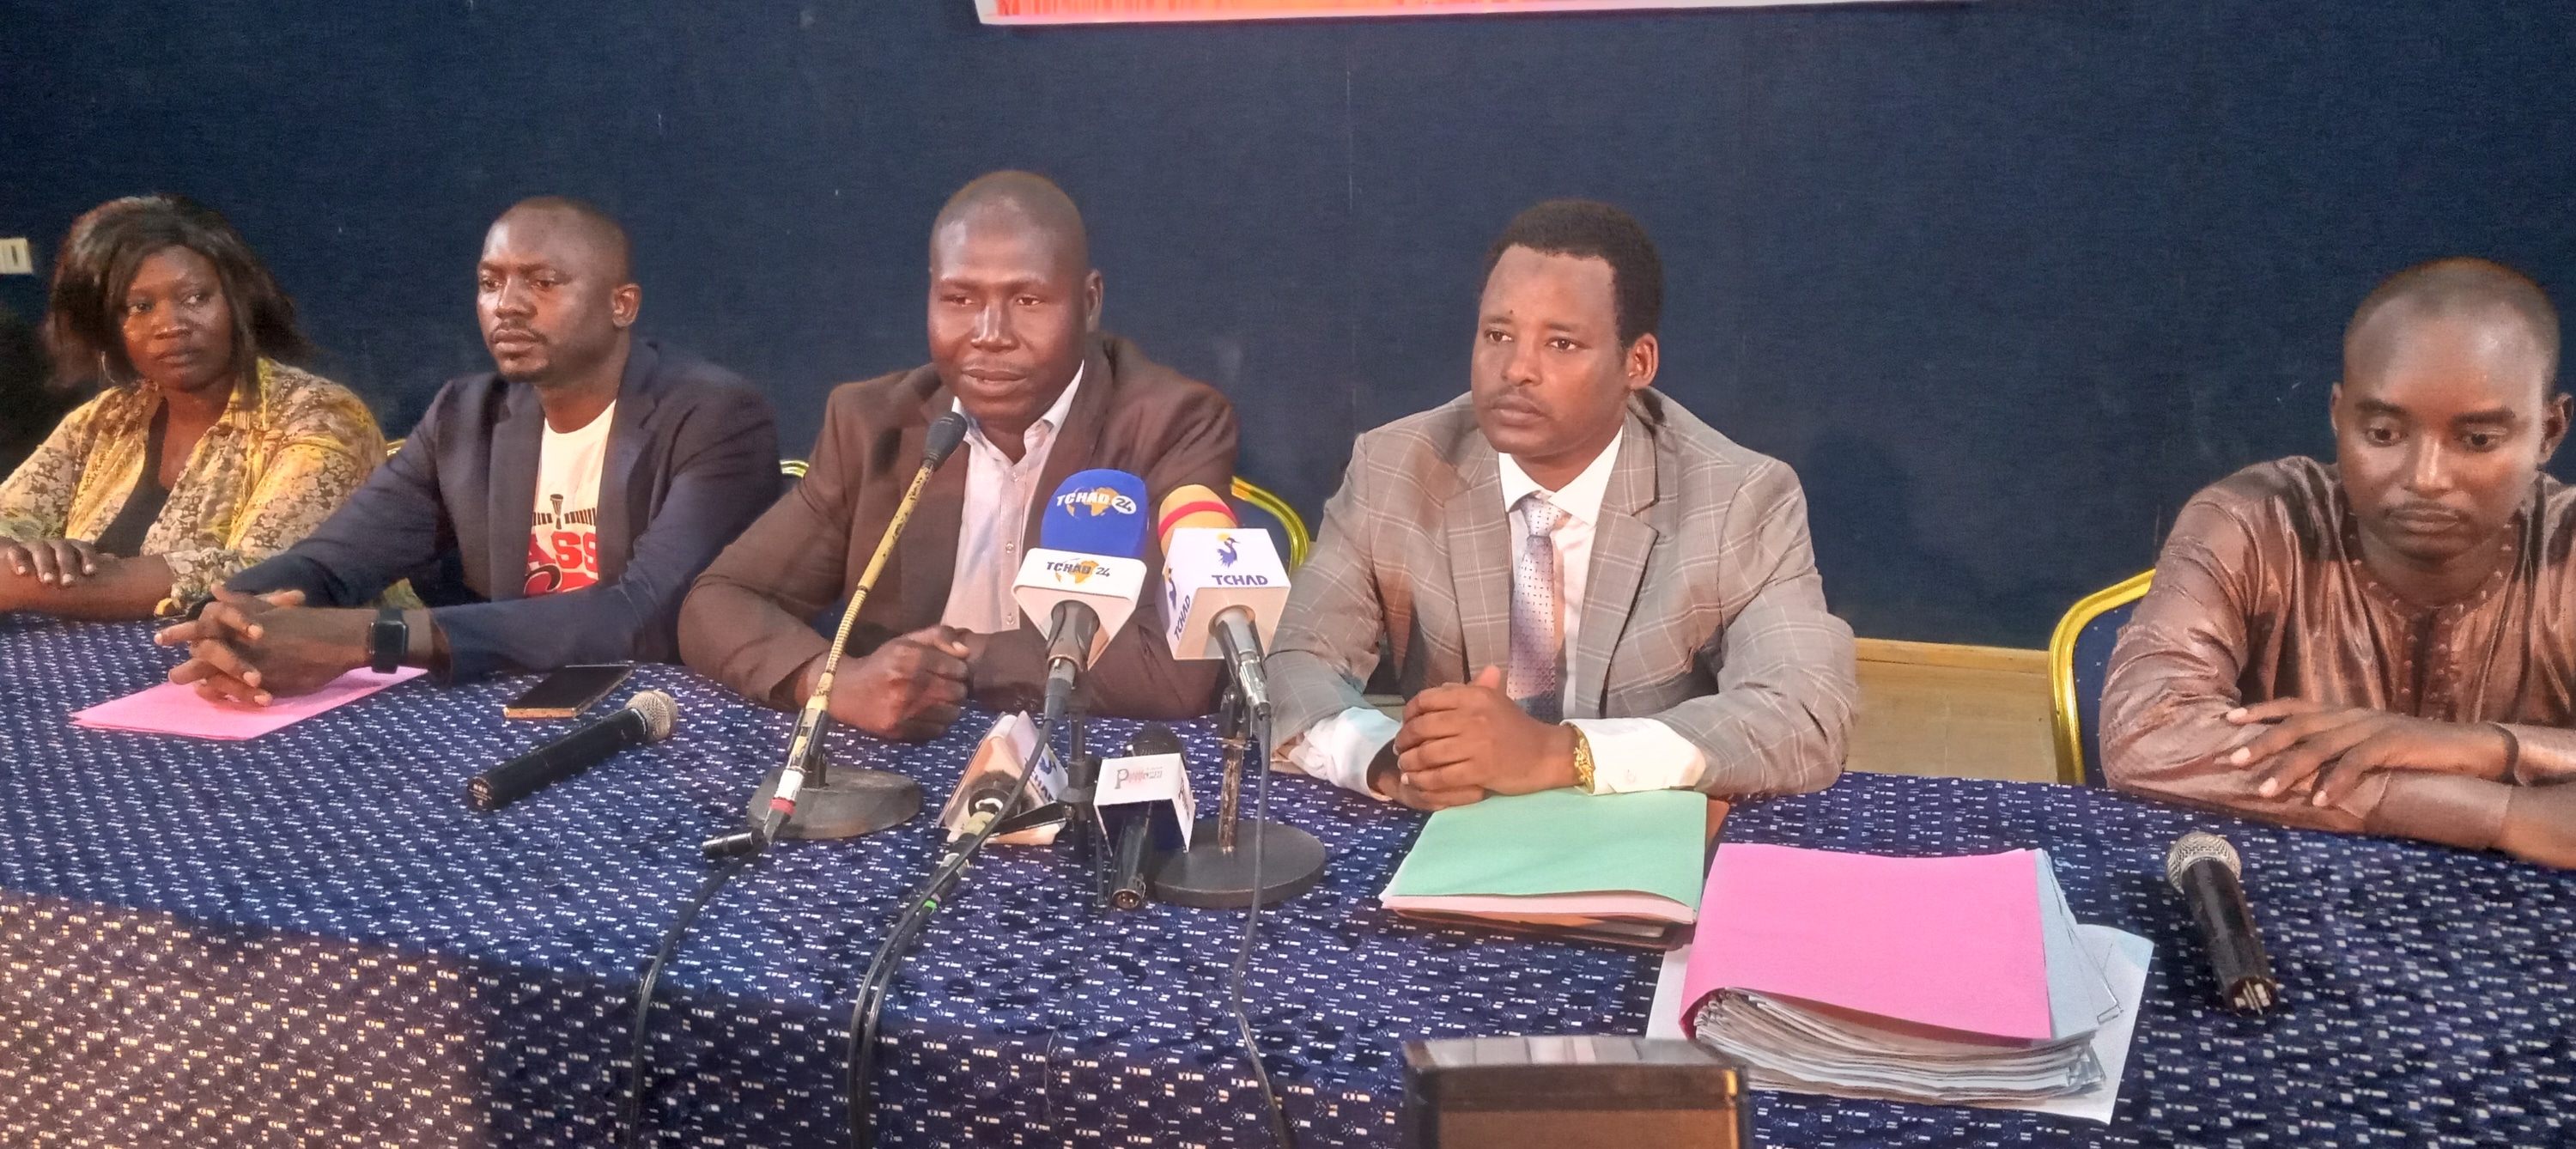 Le parti "Tchad uni" sollicite le report du dialogue